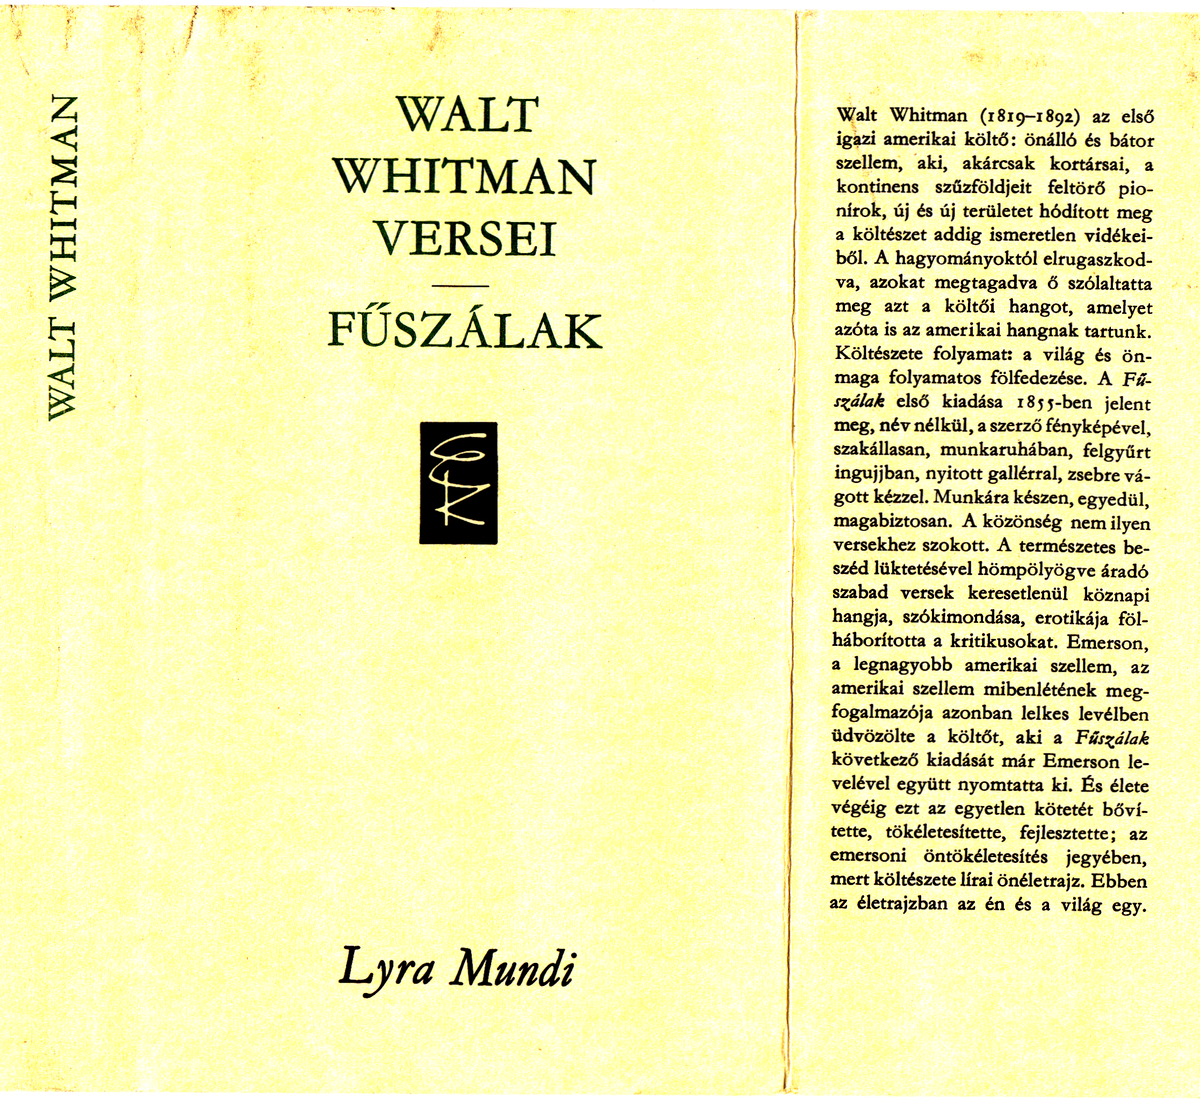 Whitman, Walt: Fűszálak, Walt Whittman versei, vál. Ferencz Győző ; ford. [többen] | PIM Gyűjtemények